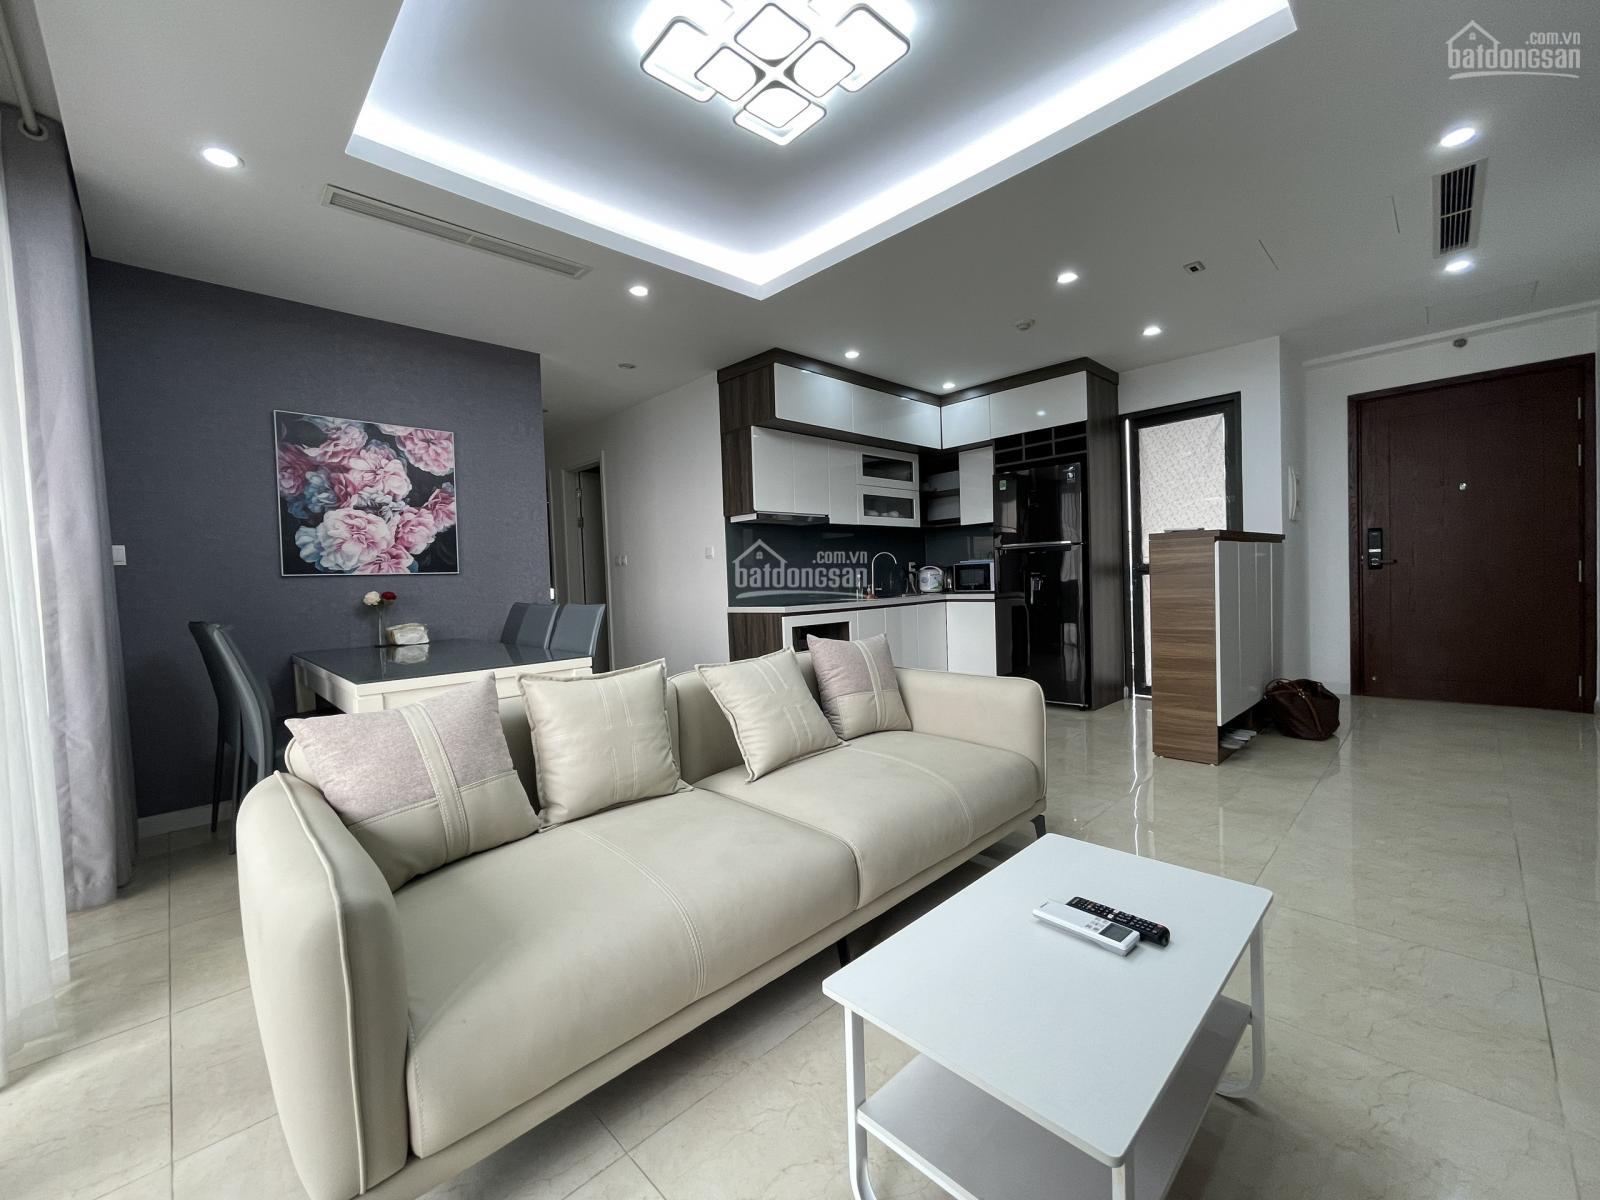 Cho thuê chung cư 90 Nguyễn Tuân, căn hộ thiết kế 2 phòng ngủ, nội thất cơ bản, giá tốt.